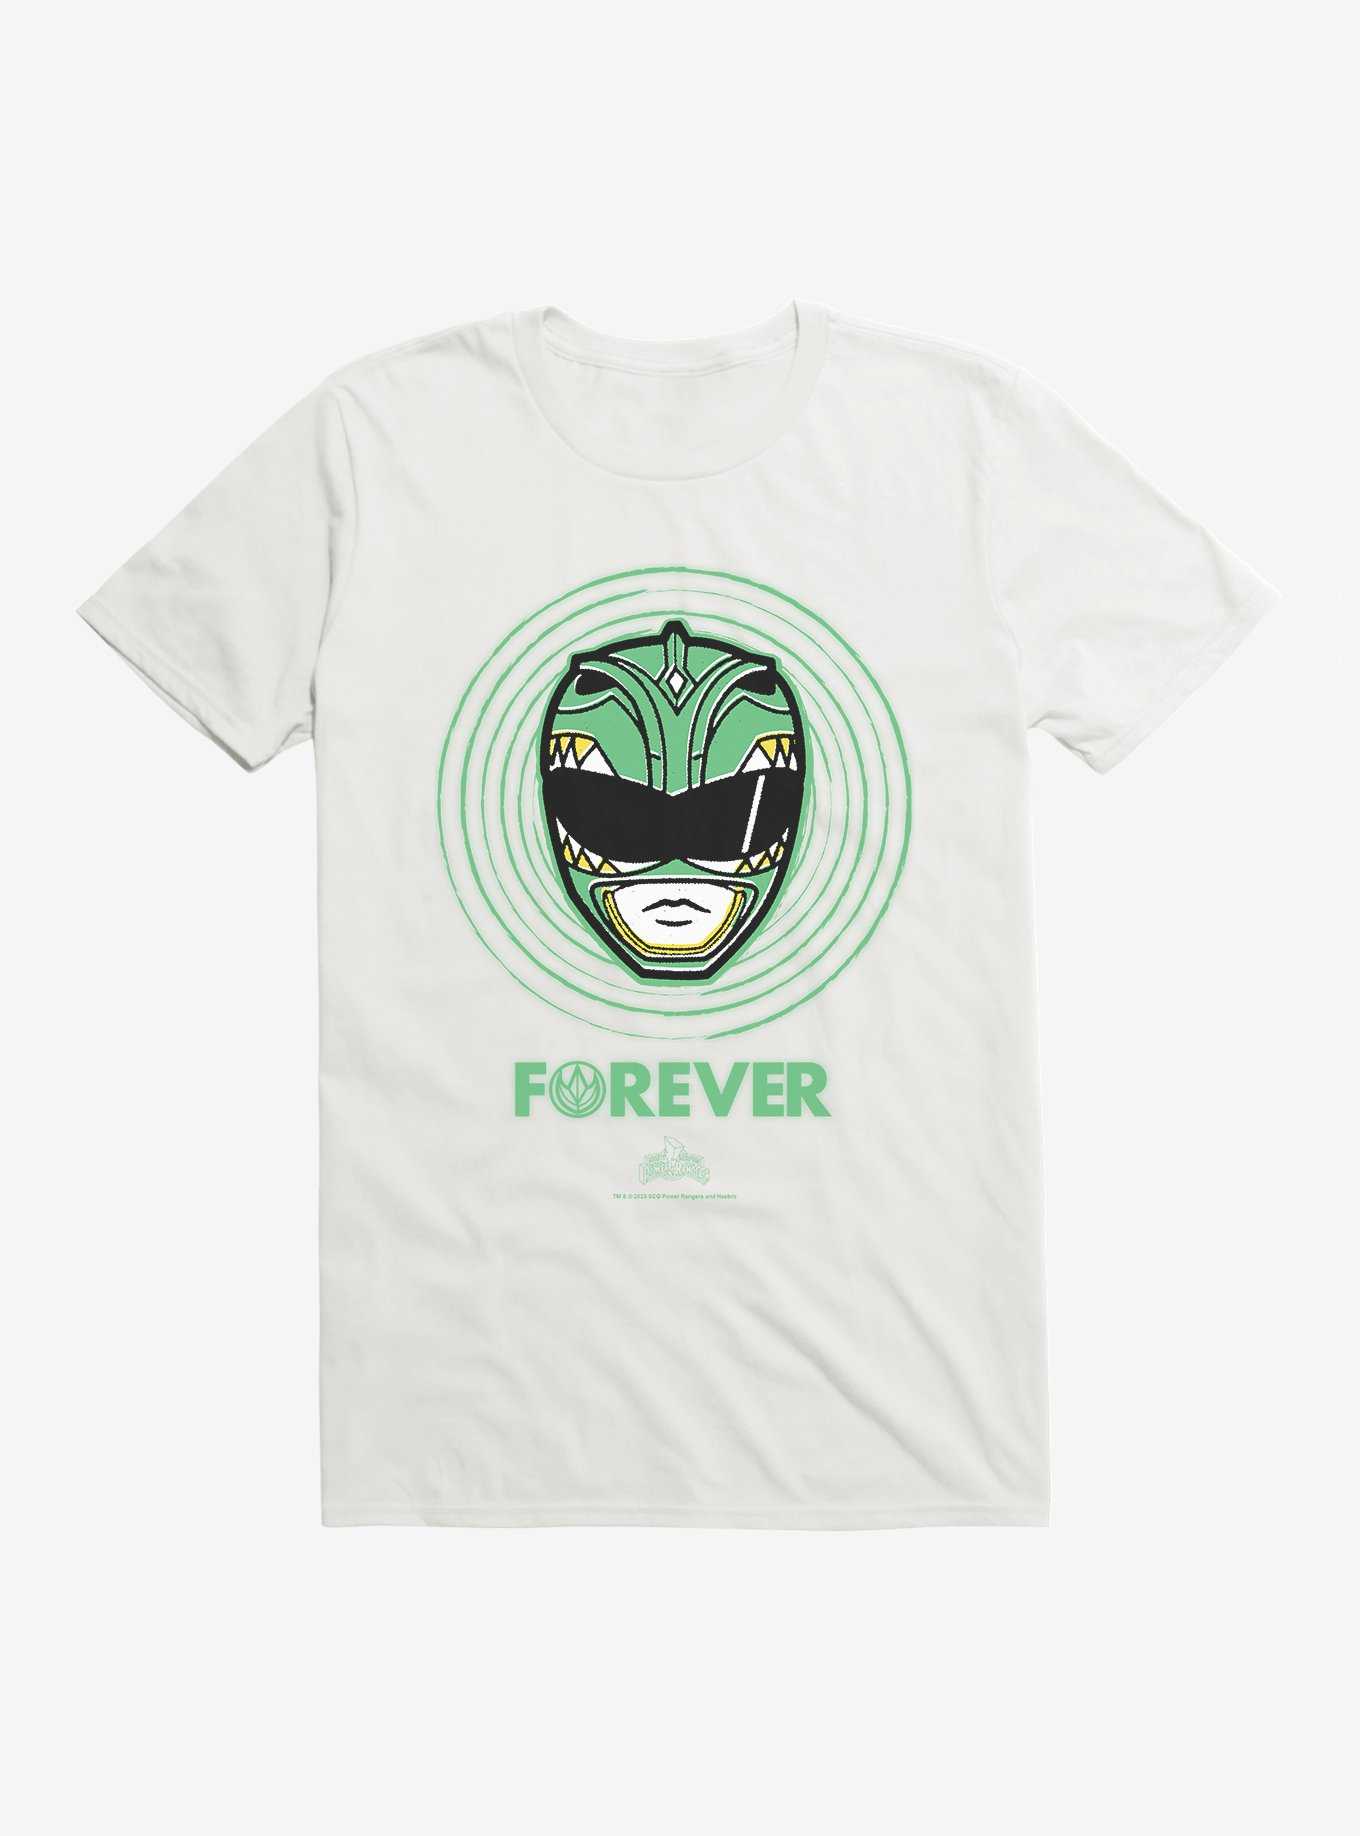 Mighty Morphin Power Rangers Green Ranger Forever T-Shirt, , hi-res